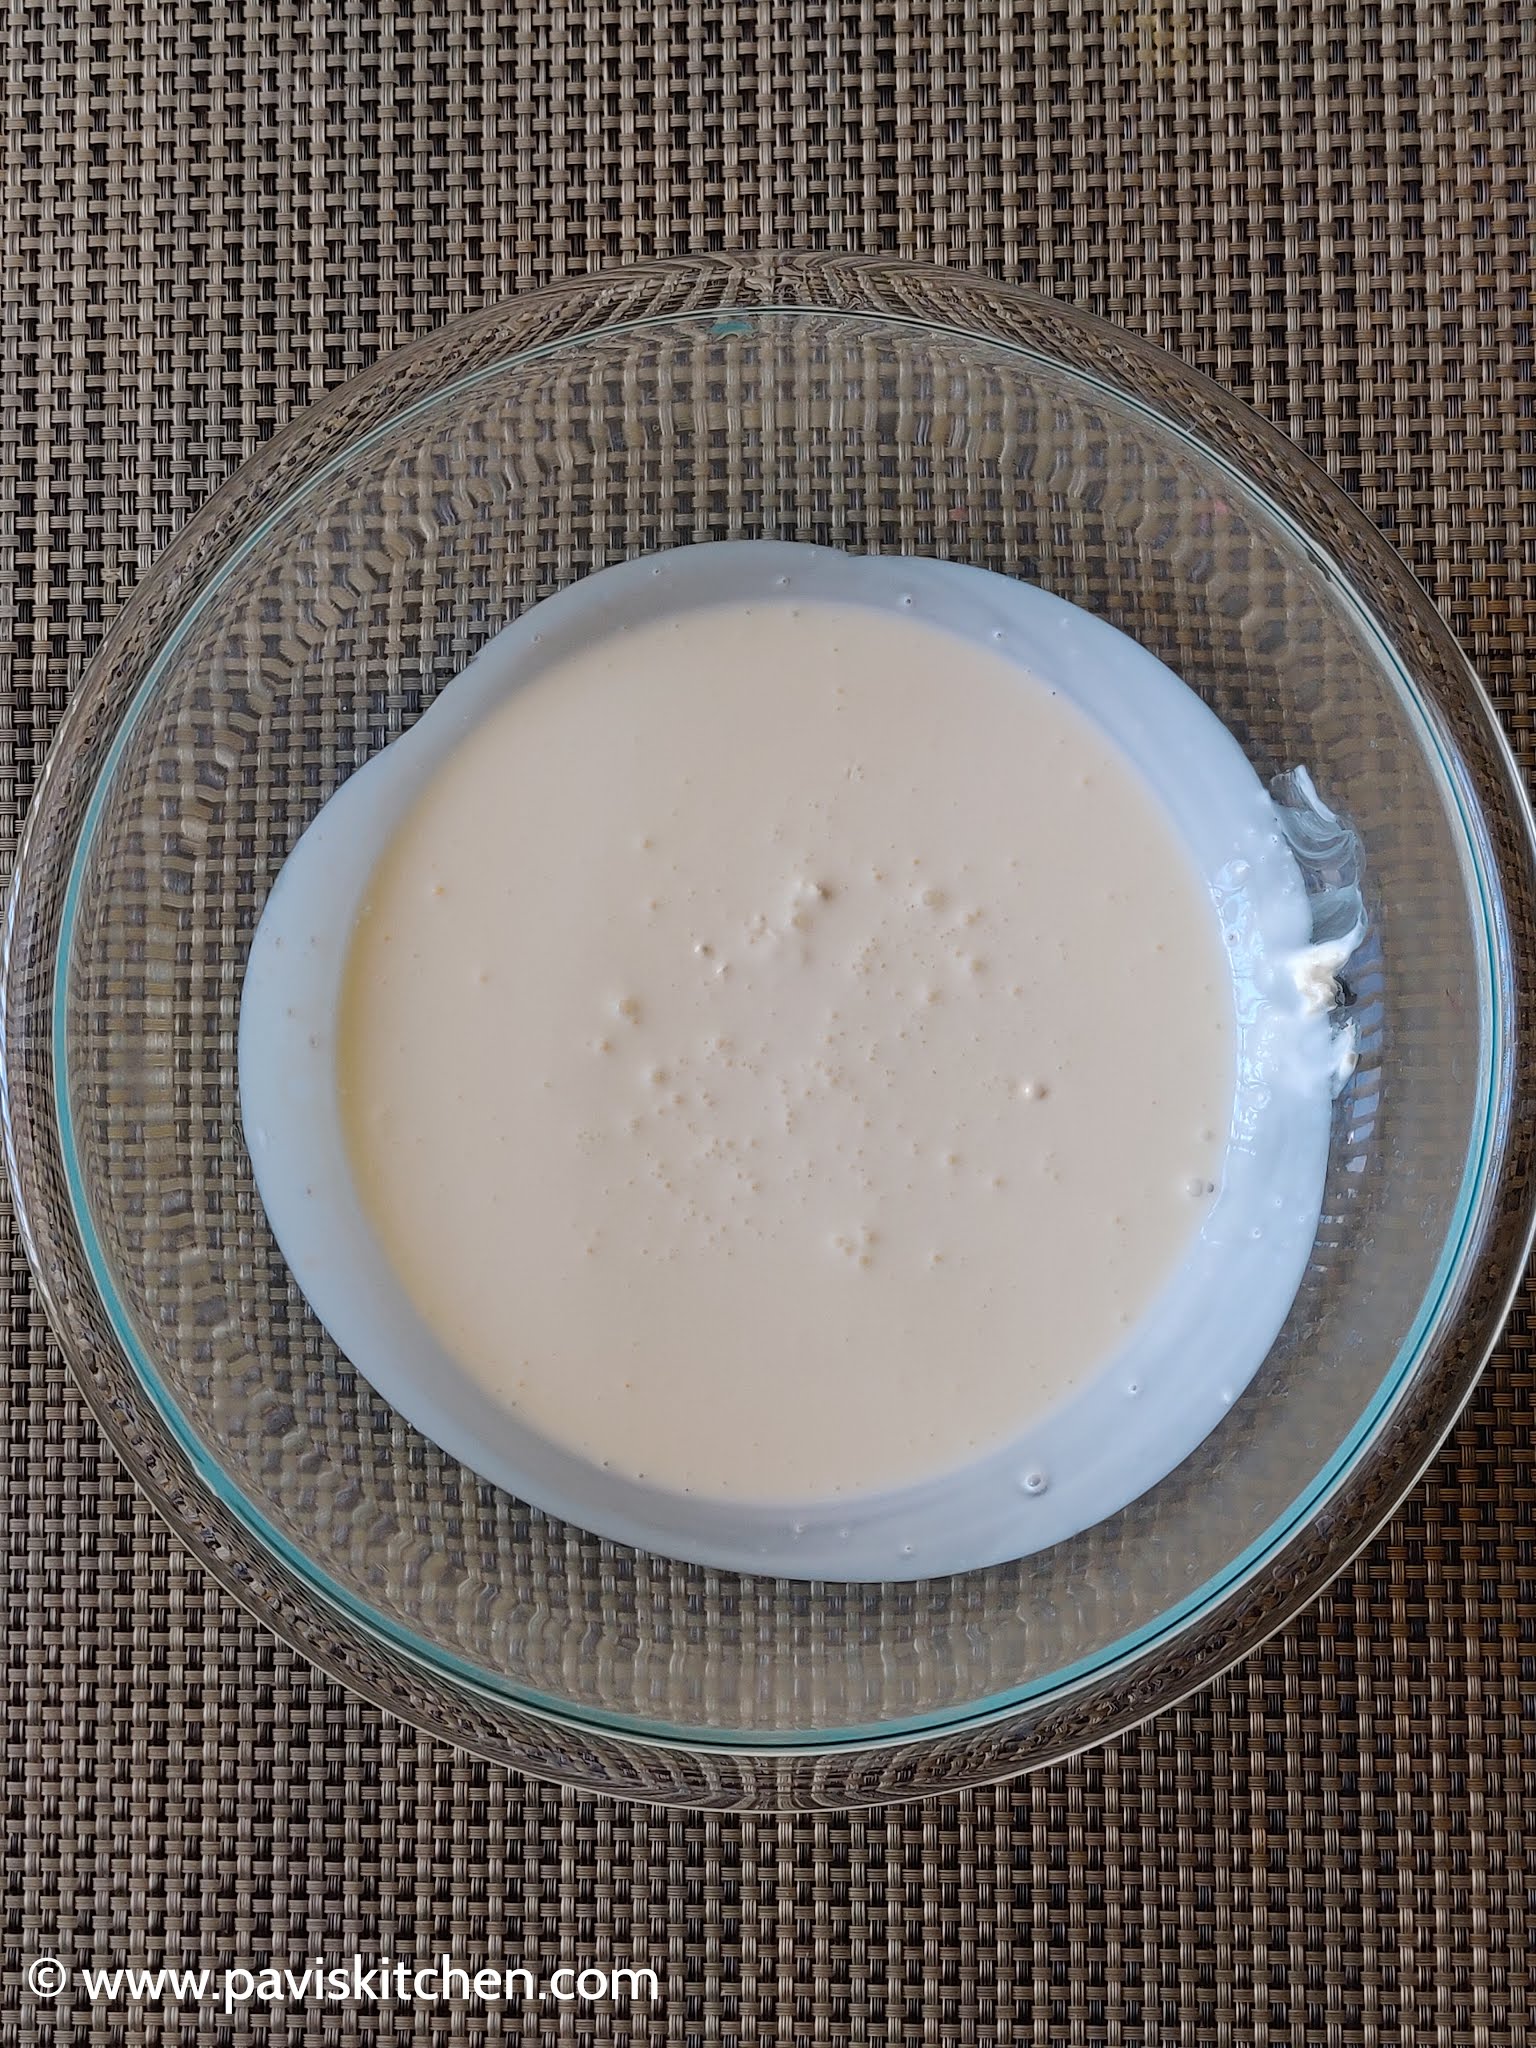 Fruit cream recipe | Punjabi fruit cream | Indian fruit cream dessert recipe | How to make fruit cream salad